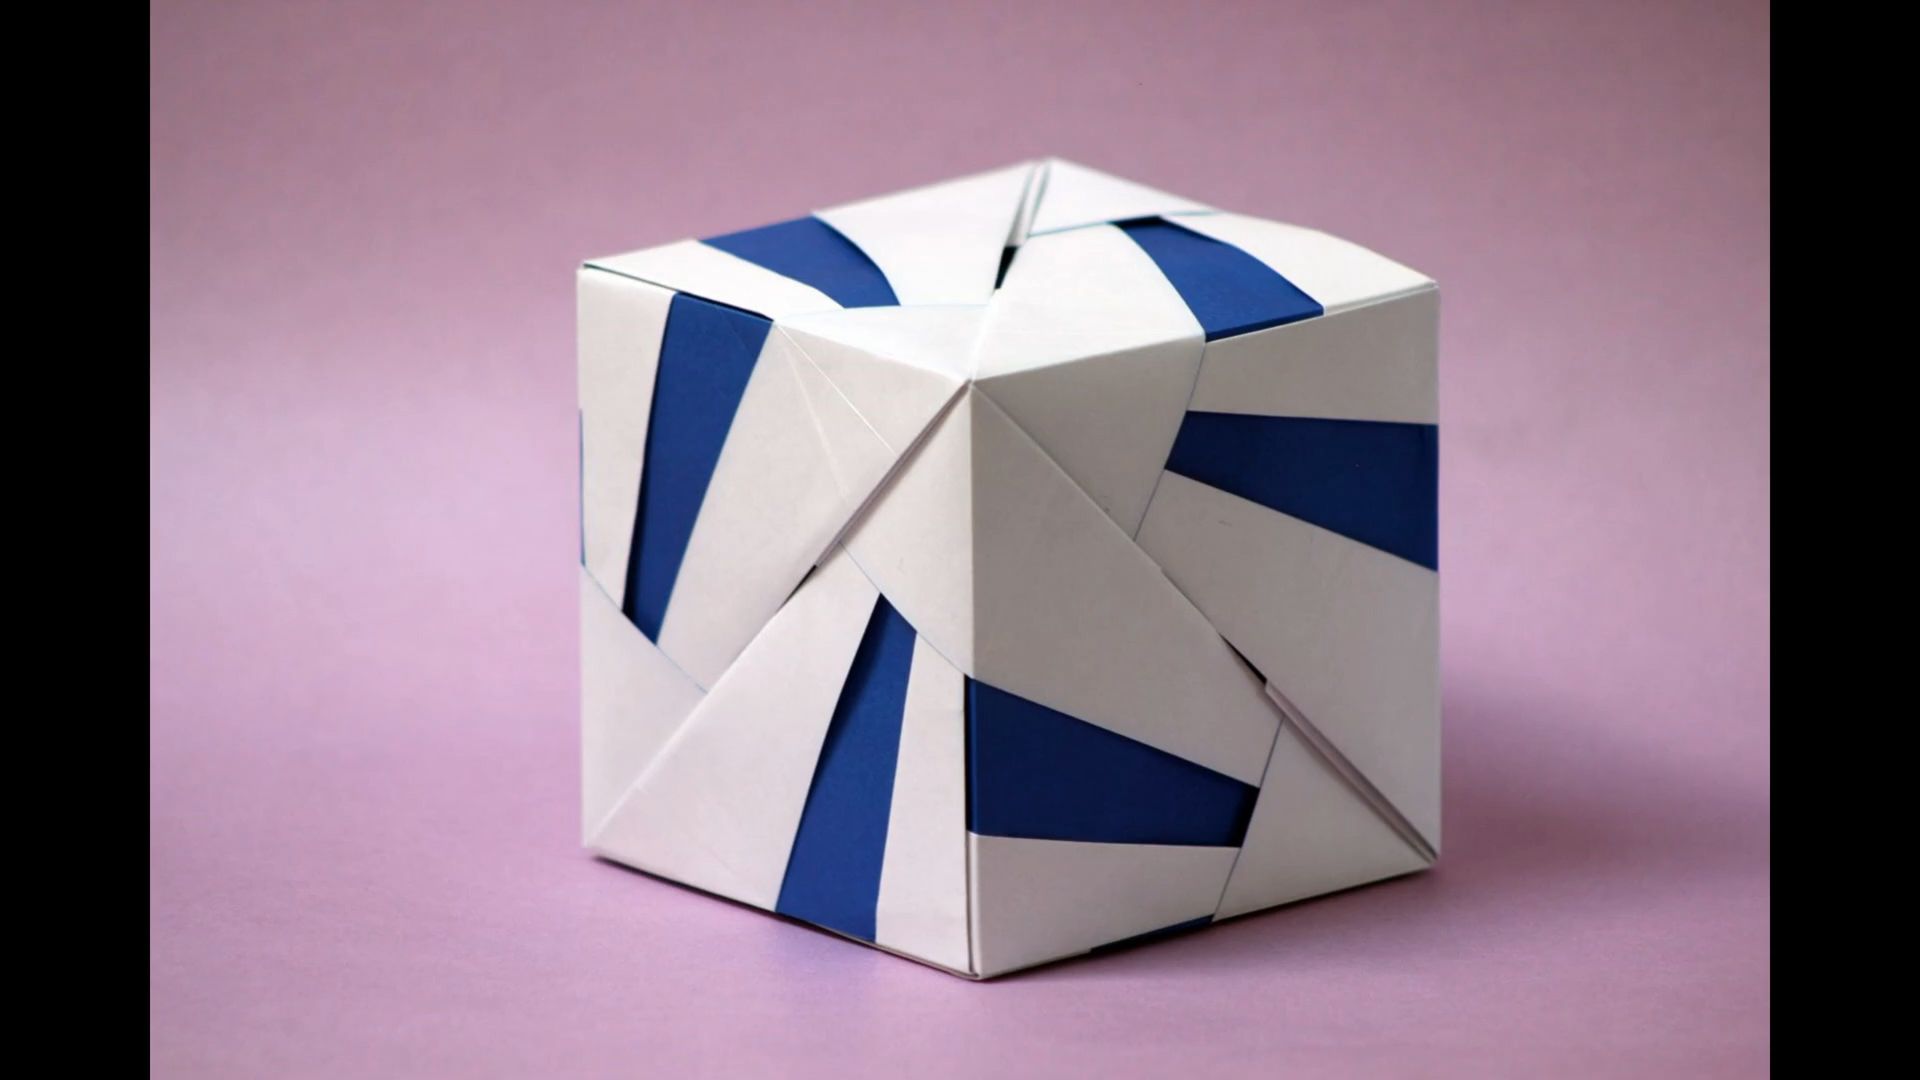 【jaime ni09o bernal】cubo hexaedro折纸花球制作